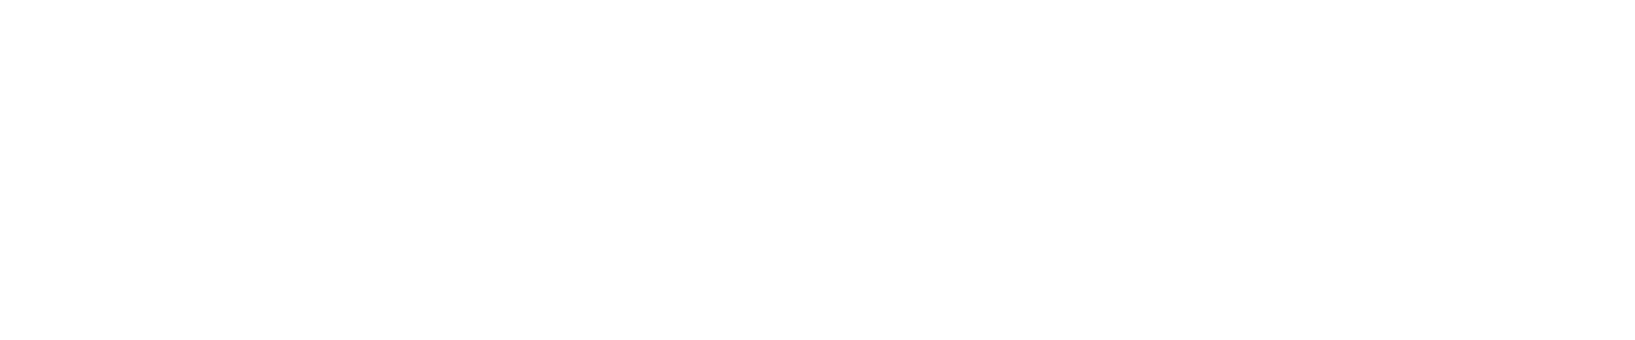 Markforged Logo groß für dunkle Hintergründe (transparentes PNG)